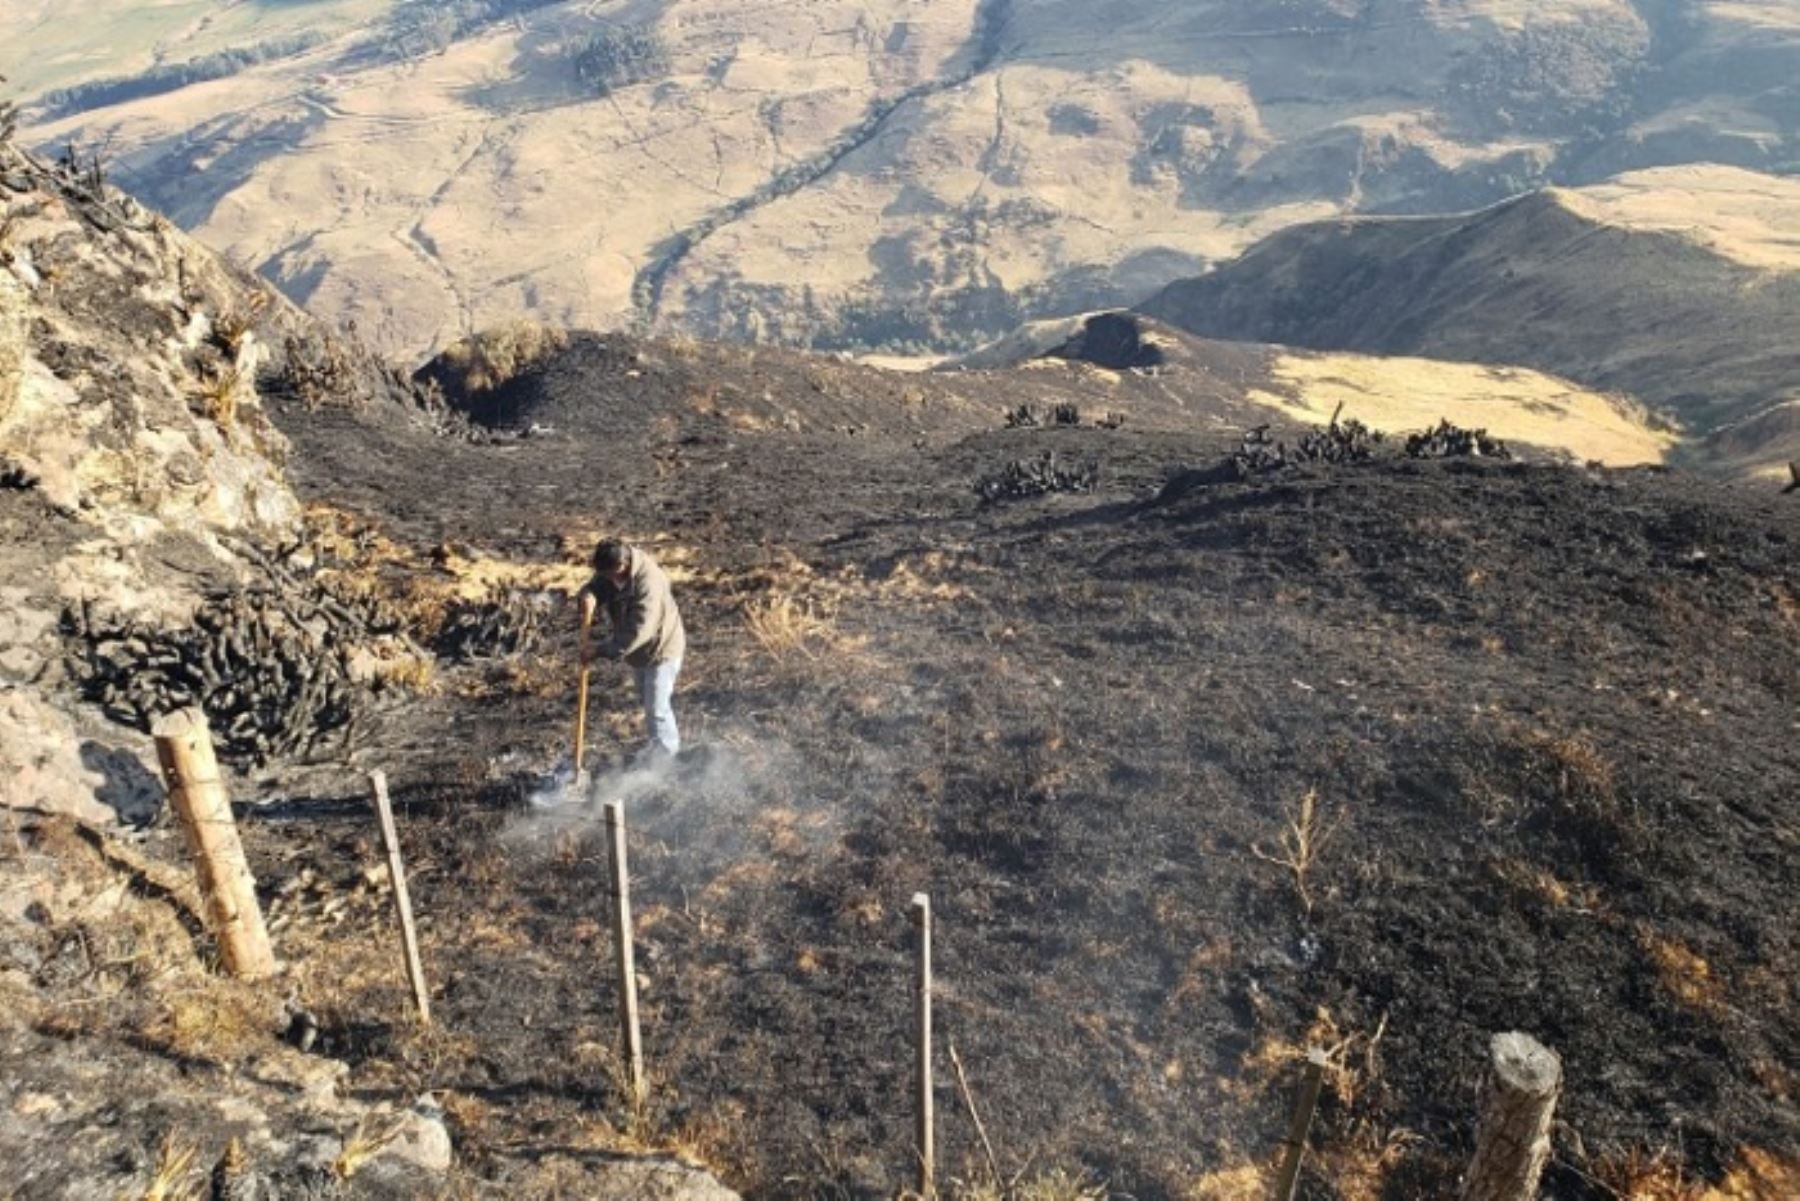 Aproximadamente 527 hectáreas de cobertura natural destruyeron los incendios forestales extinguidos esta mañana en las regiones de Cajamarca y Piura, según reportes preliminares del Instituto Nacional de Defensa Civil (Indeci).